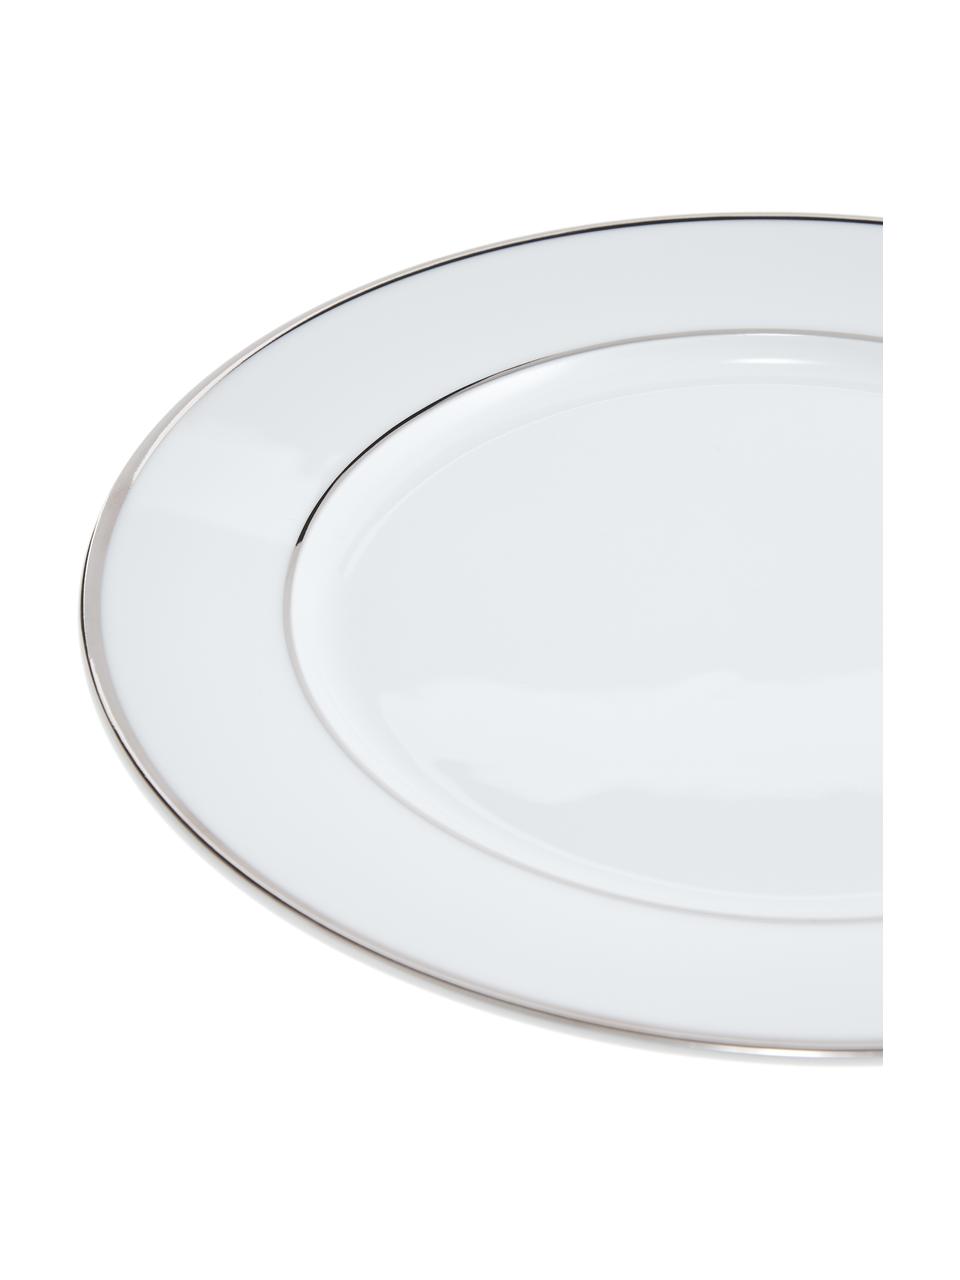 Assiette plate porcelaine bord argenté Ginger, 6 pièces, Porcelaine, Blanc, couleur argentée, Ø 27 cm